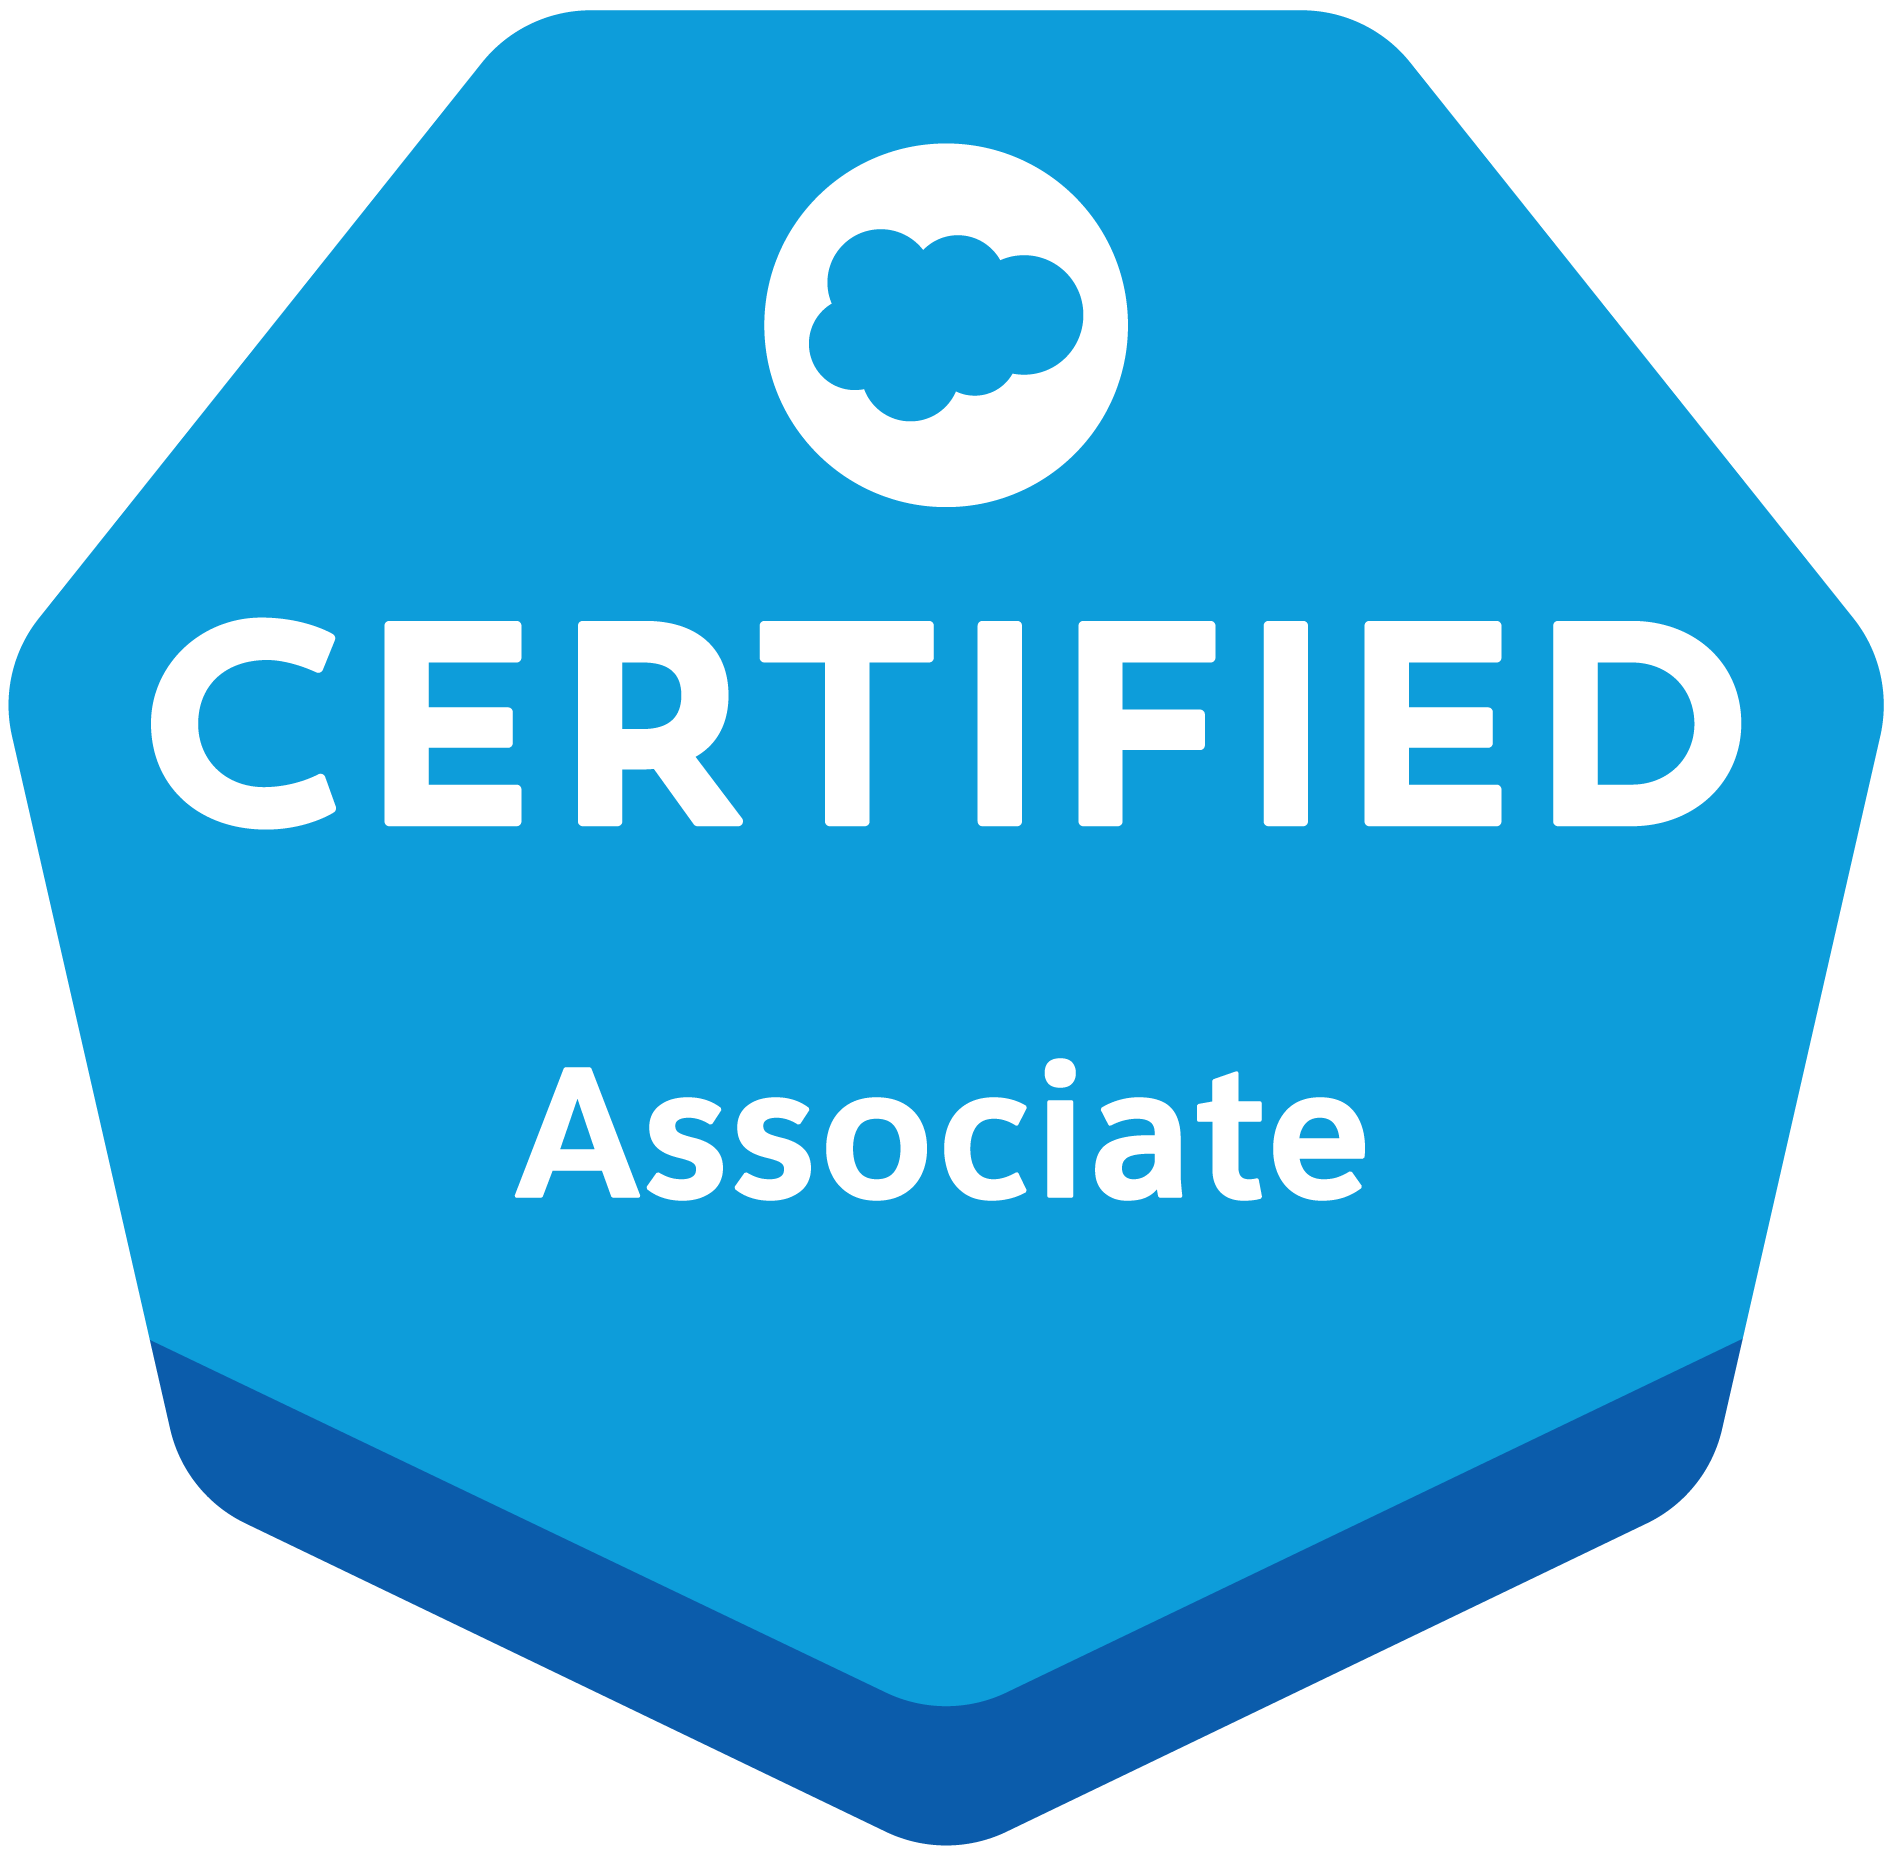 Salesforce zertifiziert Associate - salesforce agentur SUNZINET